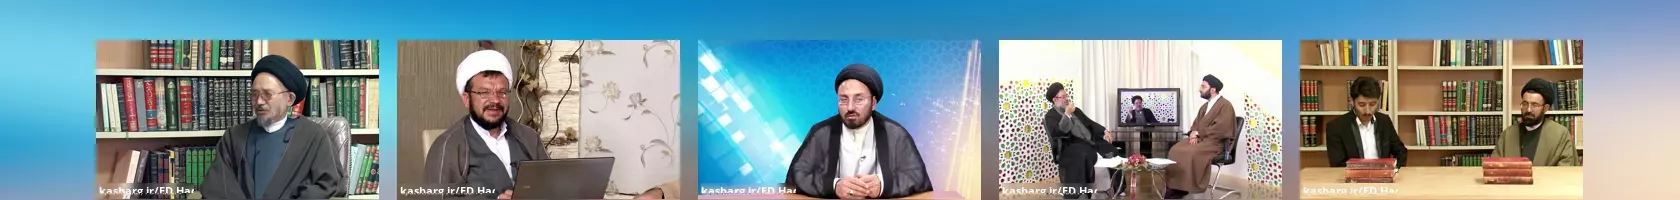  FD_HadiTV6 - شبکه هادی تی وی دری